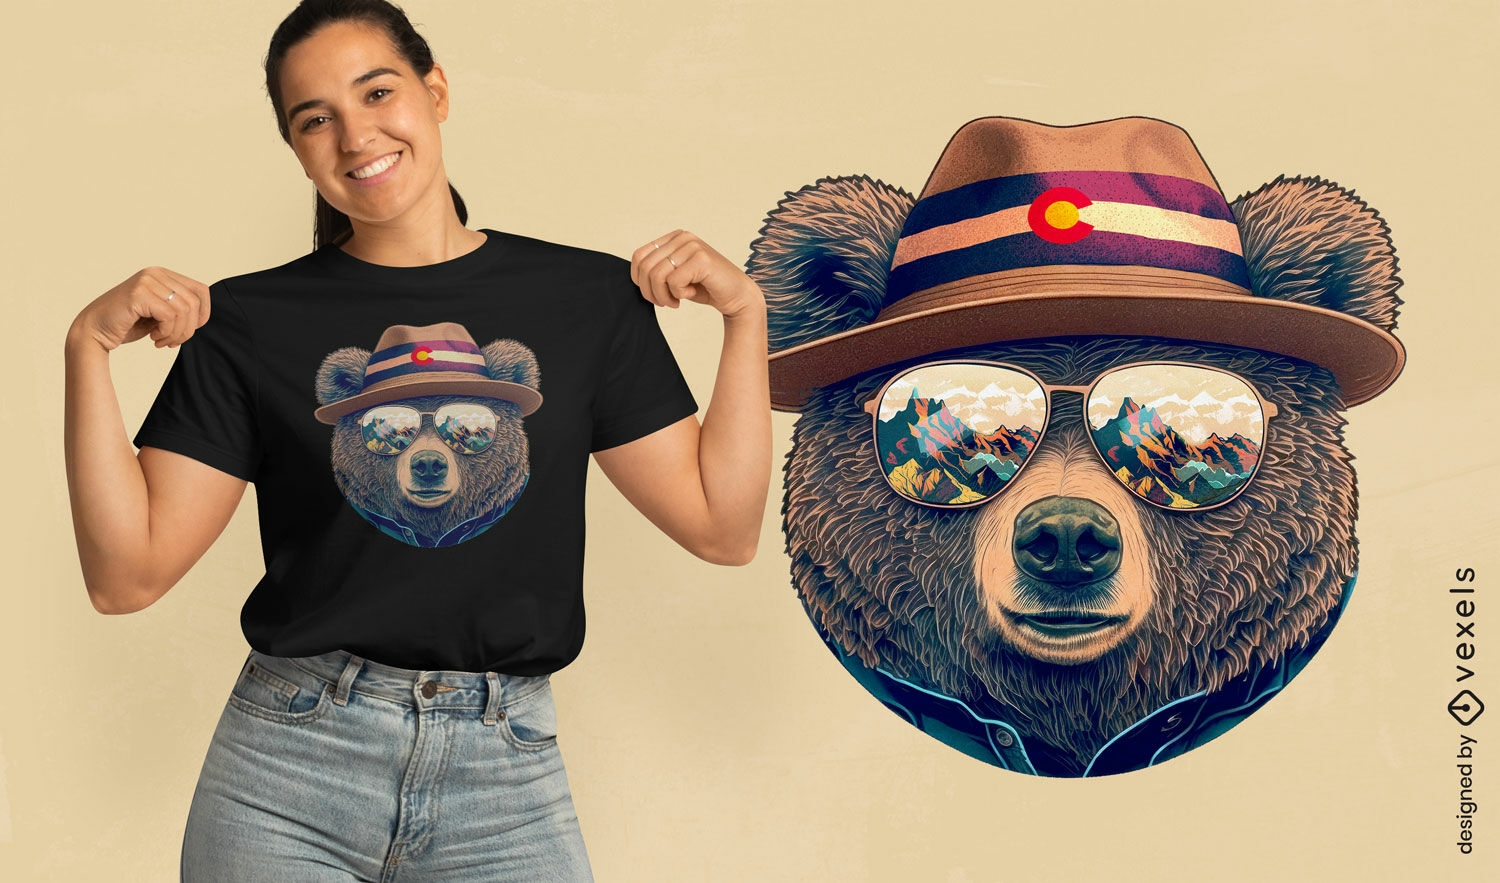 Colorado's bear t-shirt design